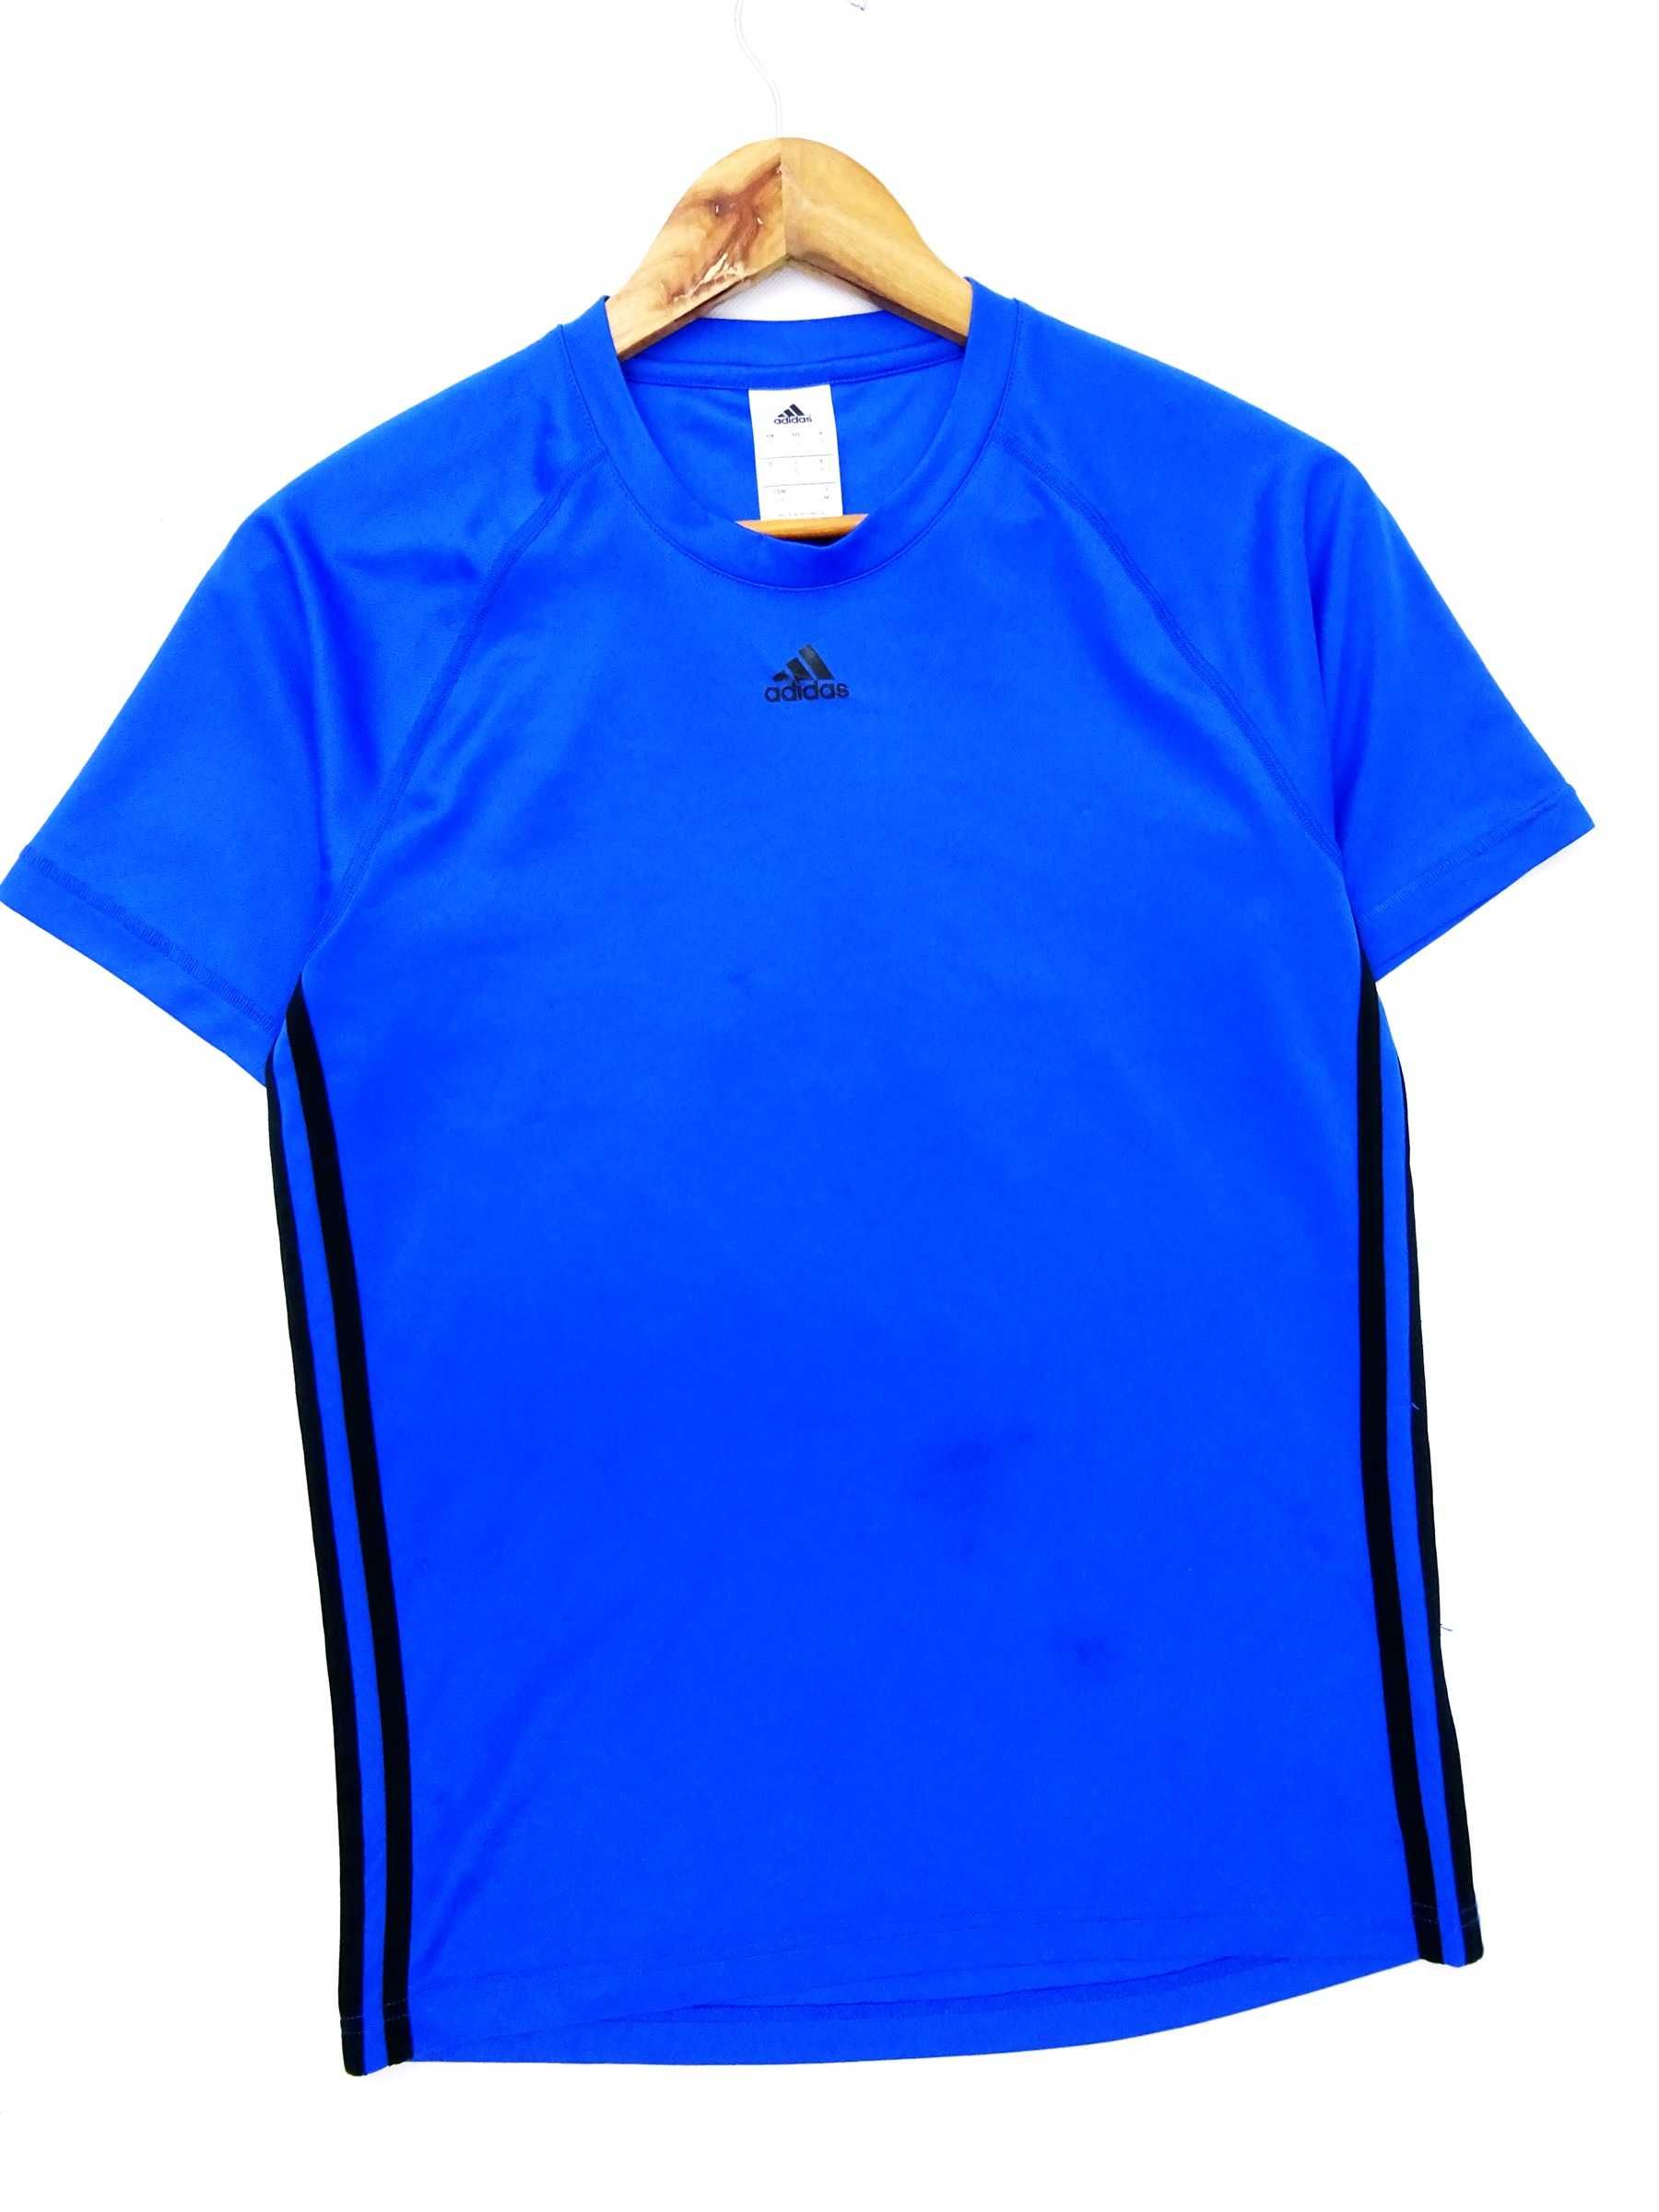 AY61  Treningowa bluza męska Adidas koszulka t-shirt S